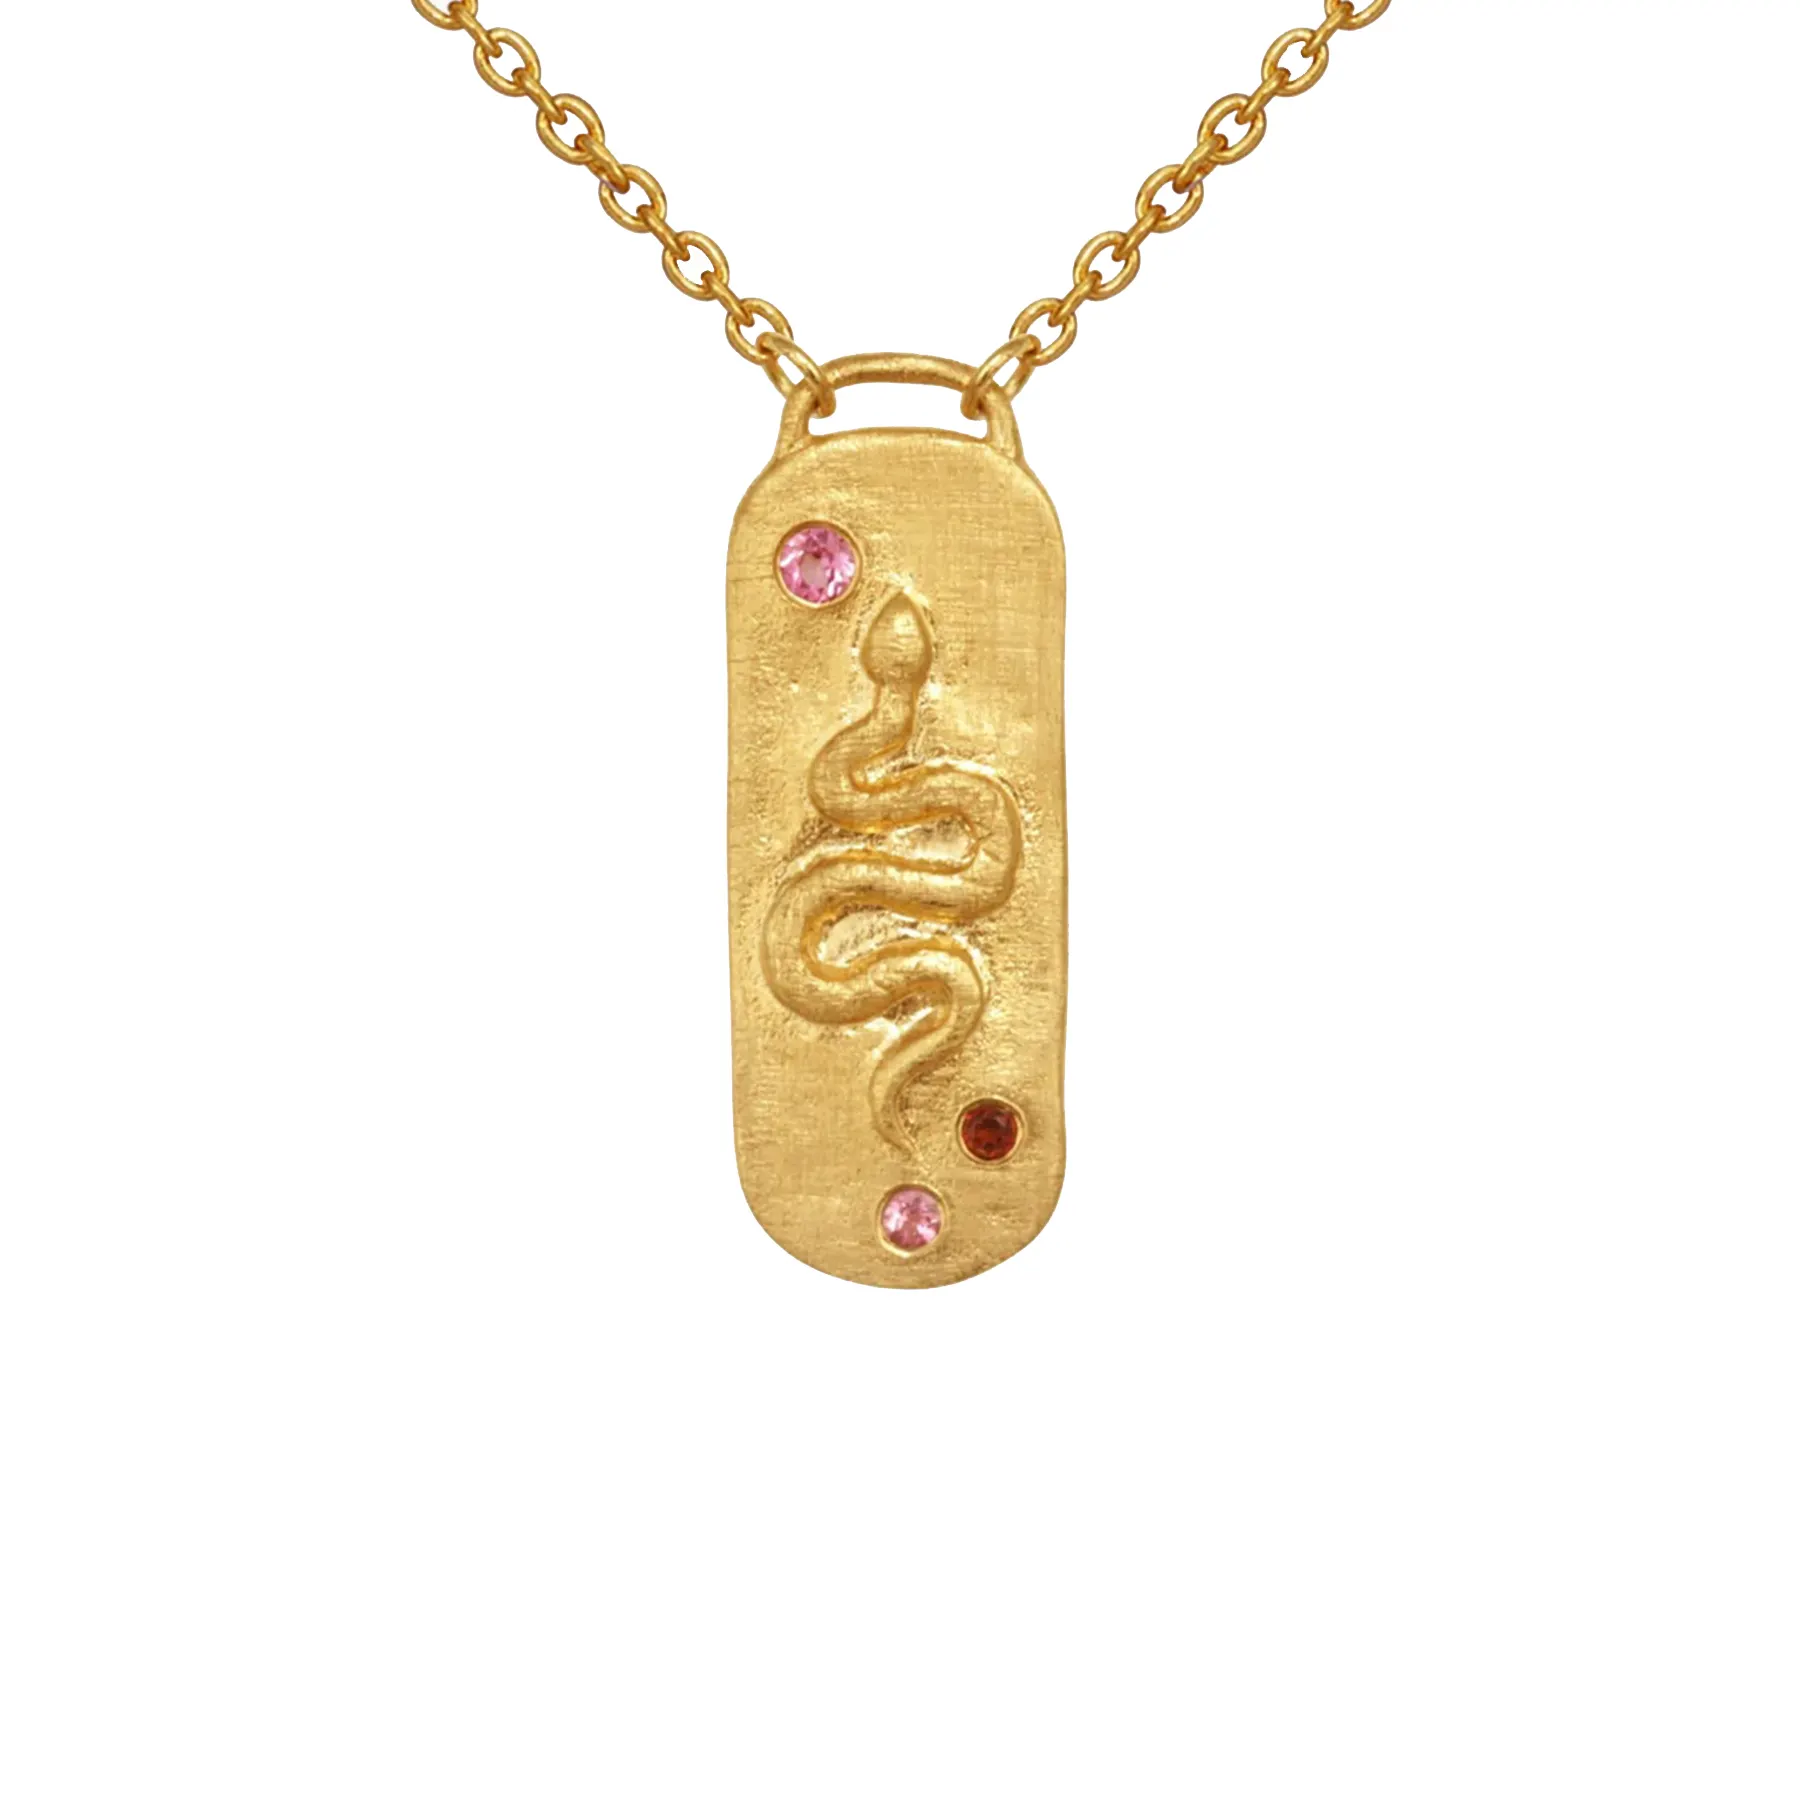 Yüksek kaliteli altın vermeil takı gümüş granat yılan kolye kolye kadın kolye